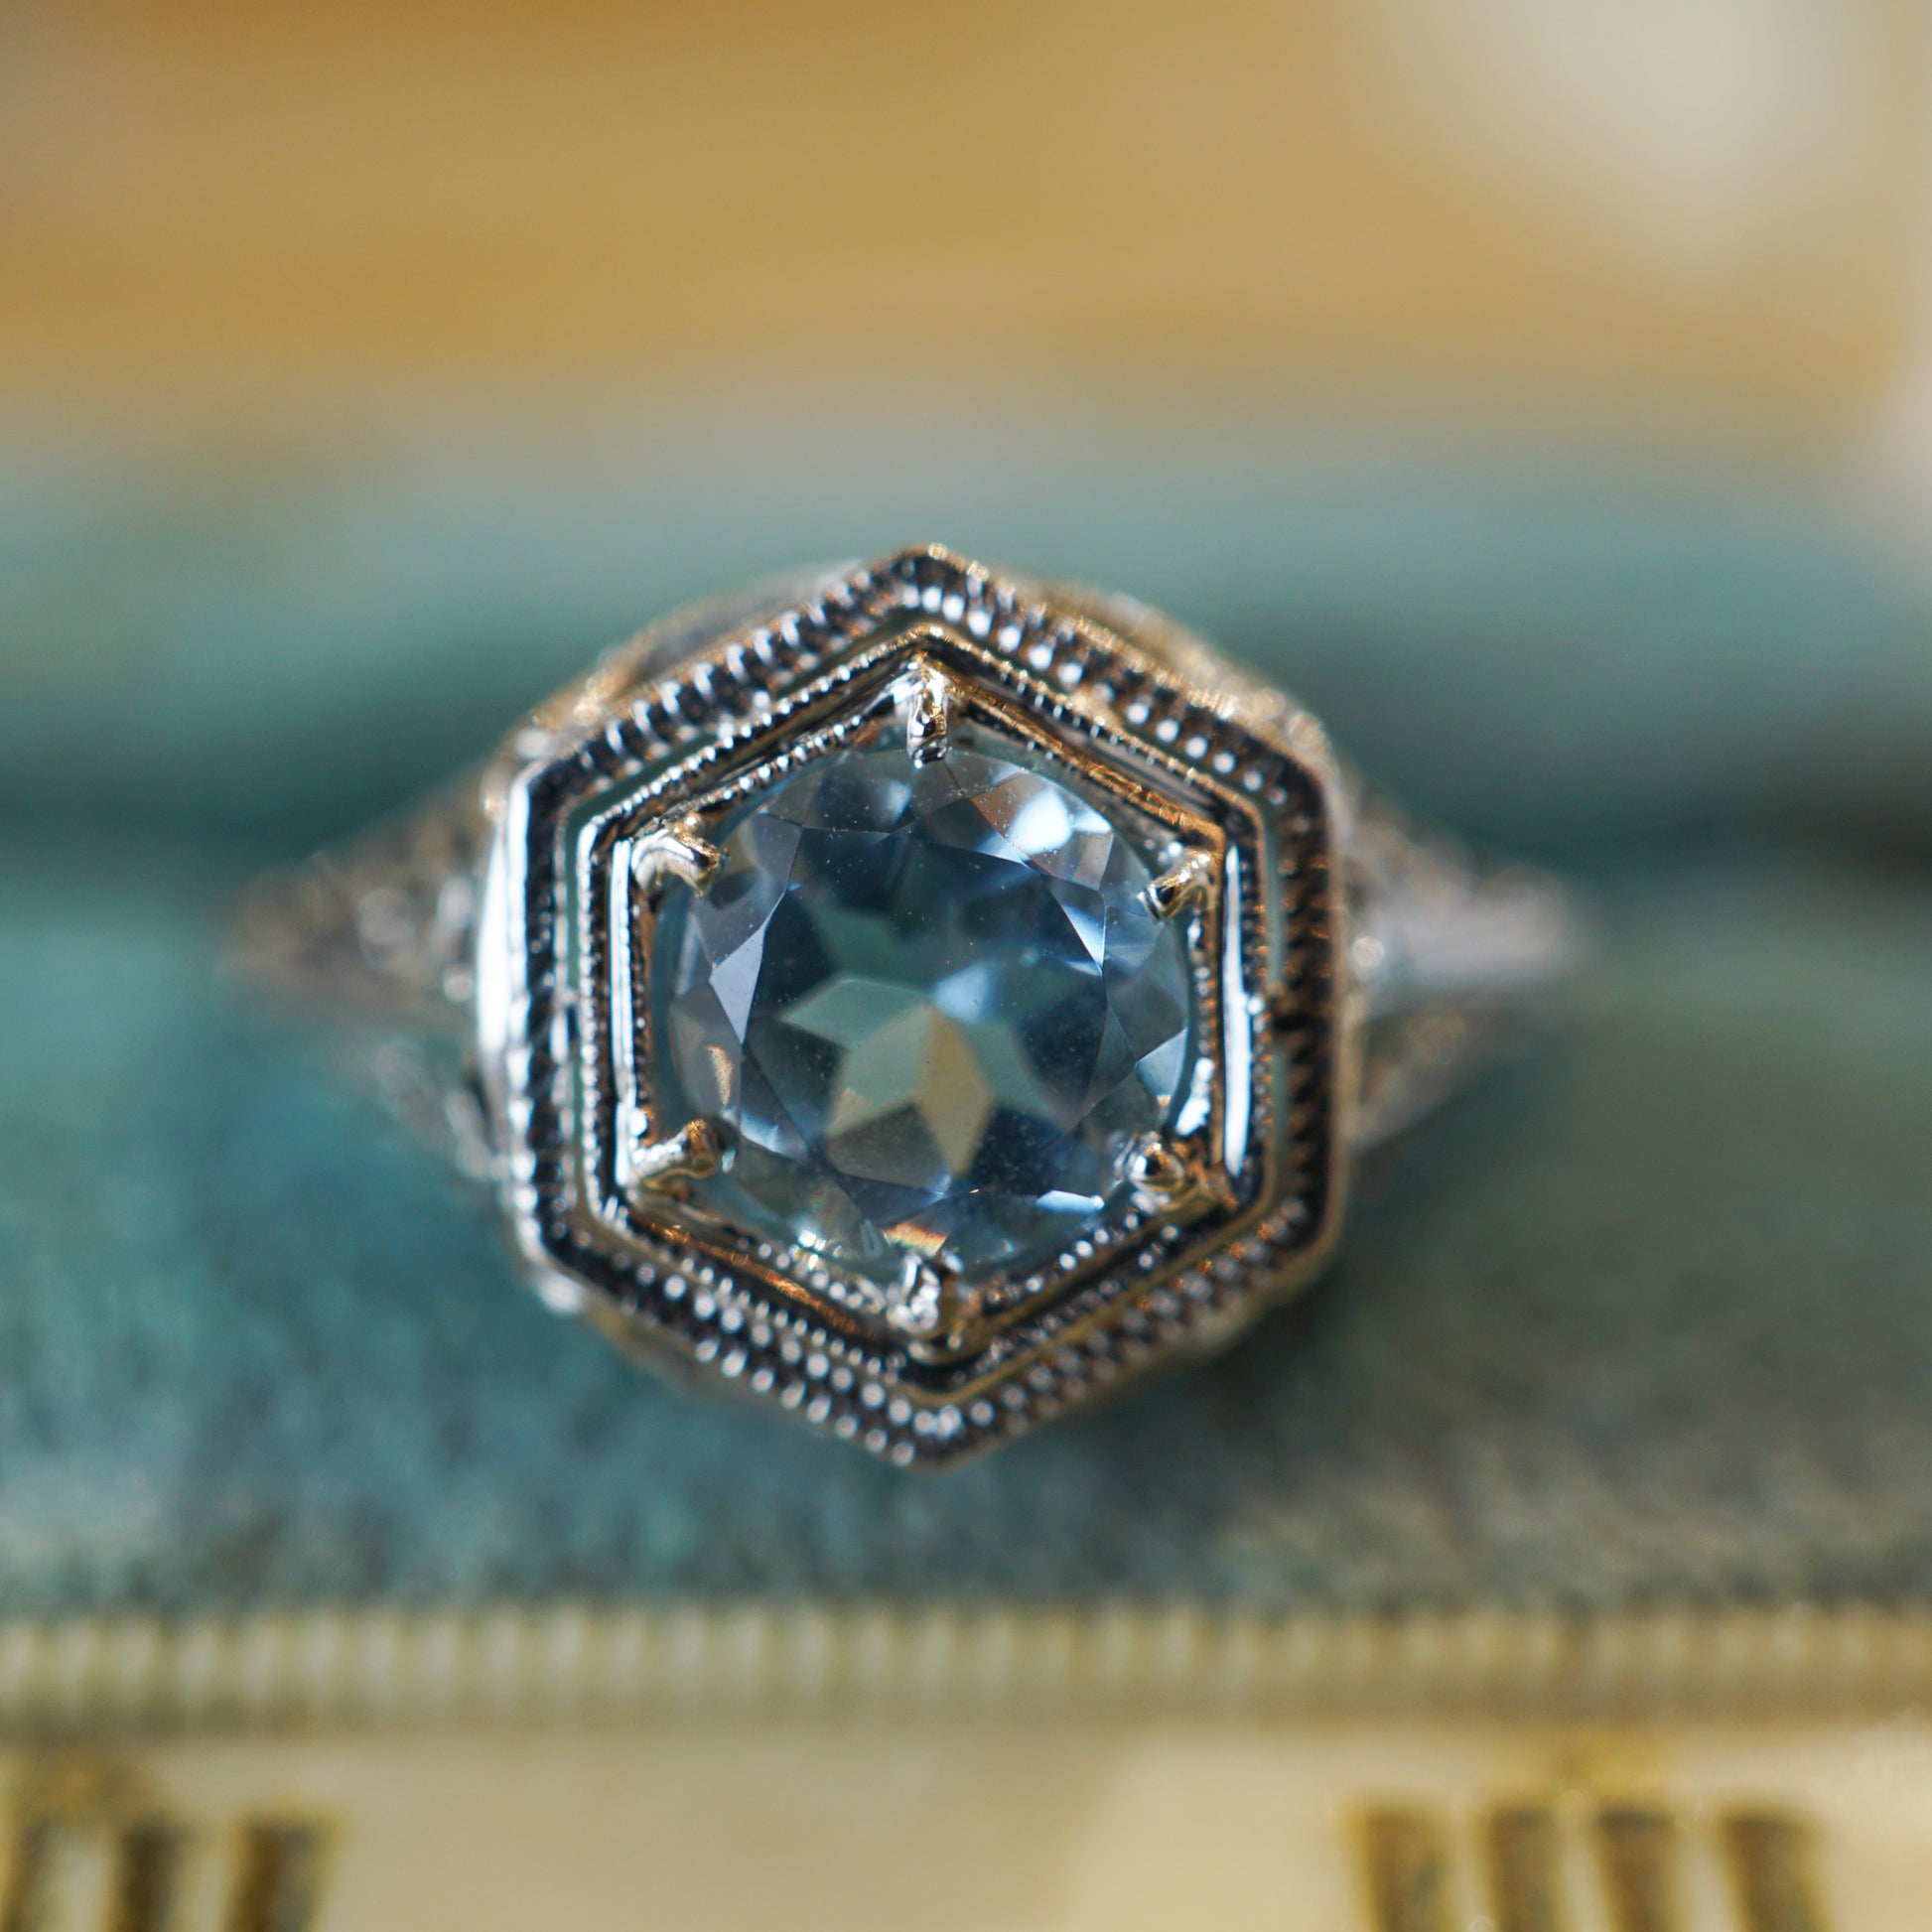 Art Deco Hexagonal Aquamarine Ring in 18K White GoldComposition: 18 Karat White GoldRing Size: 6.75Total Gram Weight: 2.2 gInscription: 18k